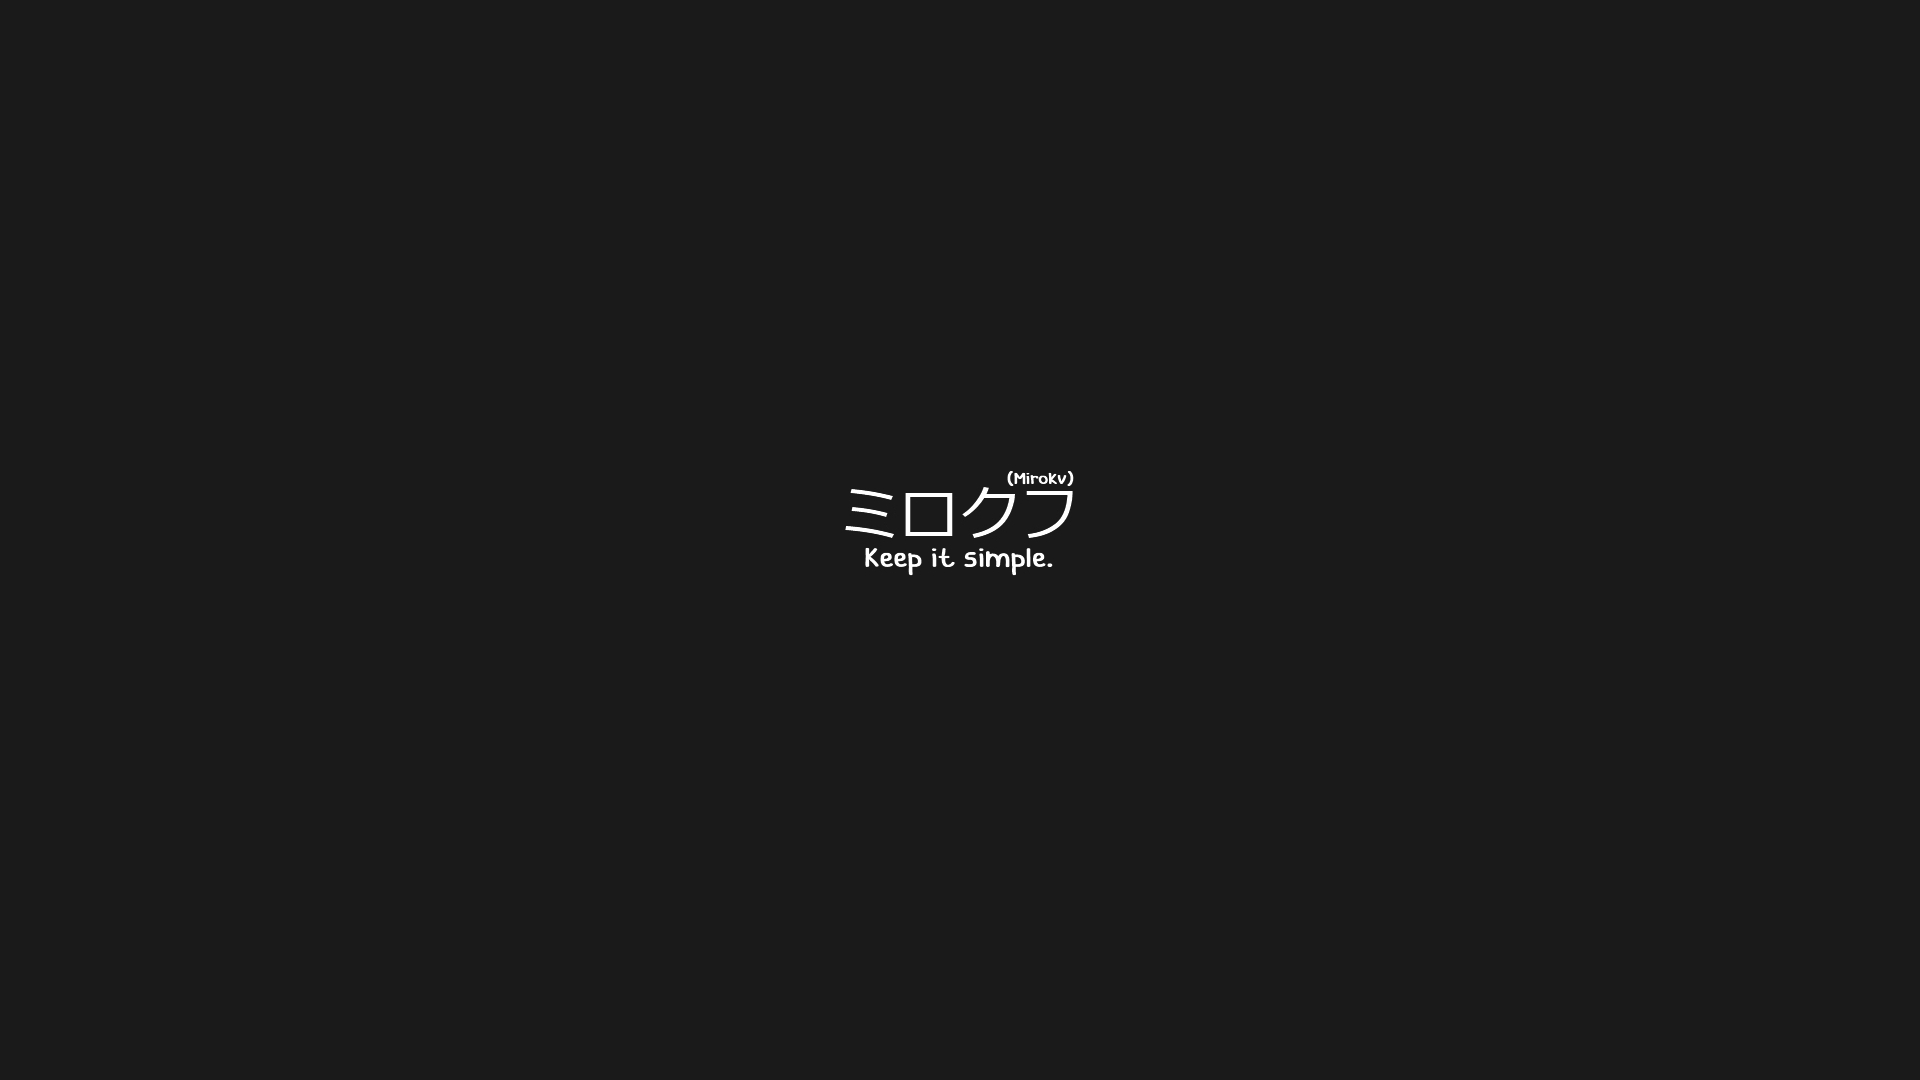 General 1920x1080 translated Japanese simple background black background minimalism katakana